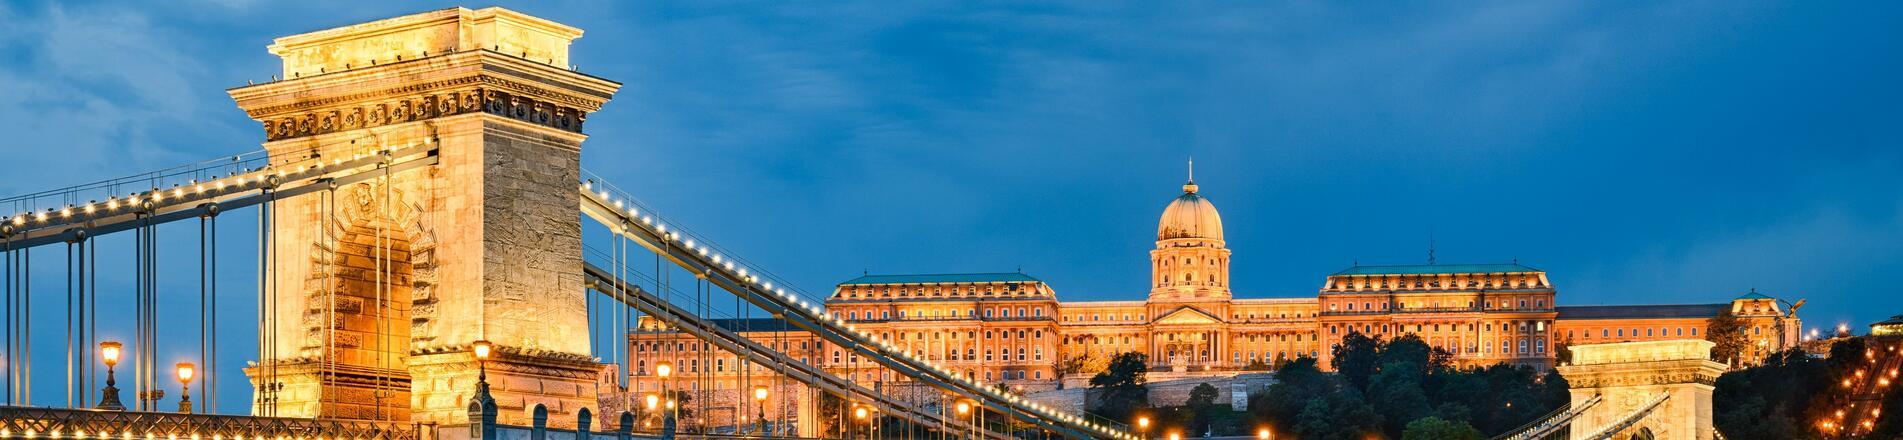 Mit nézzünk meg Budapesten, Magyarország fővárosában?